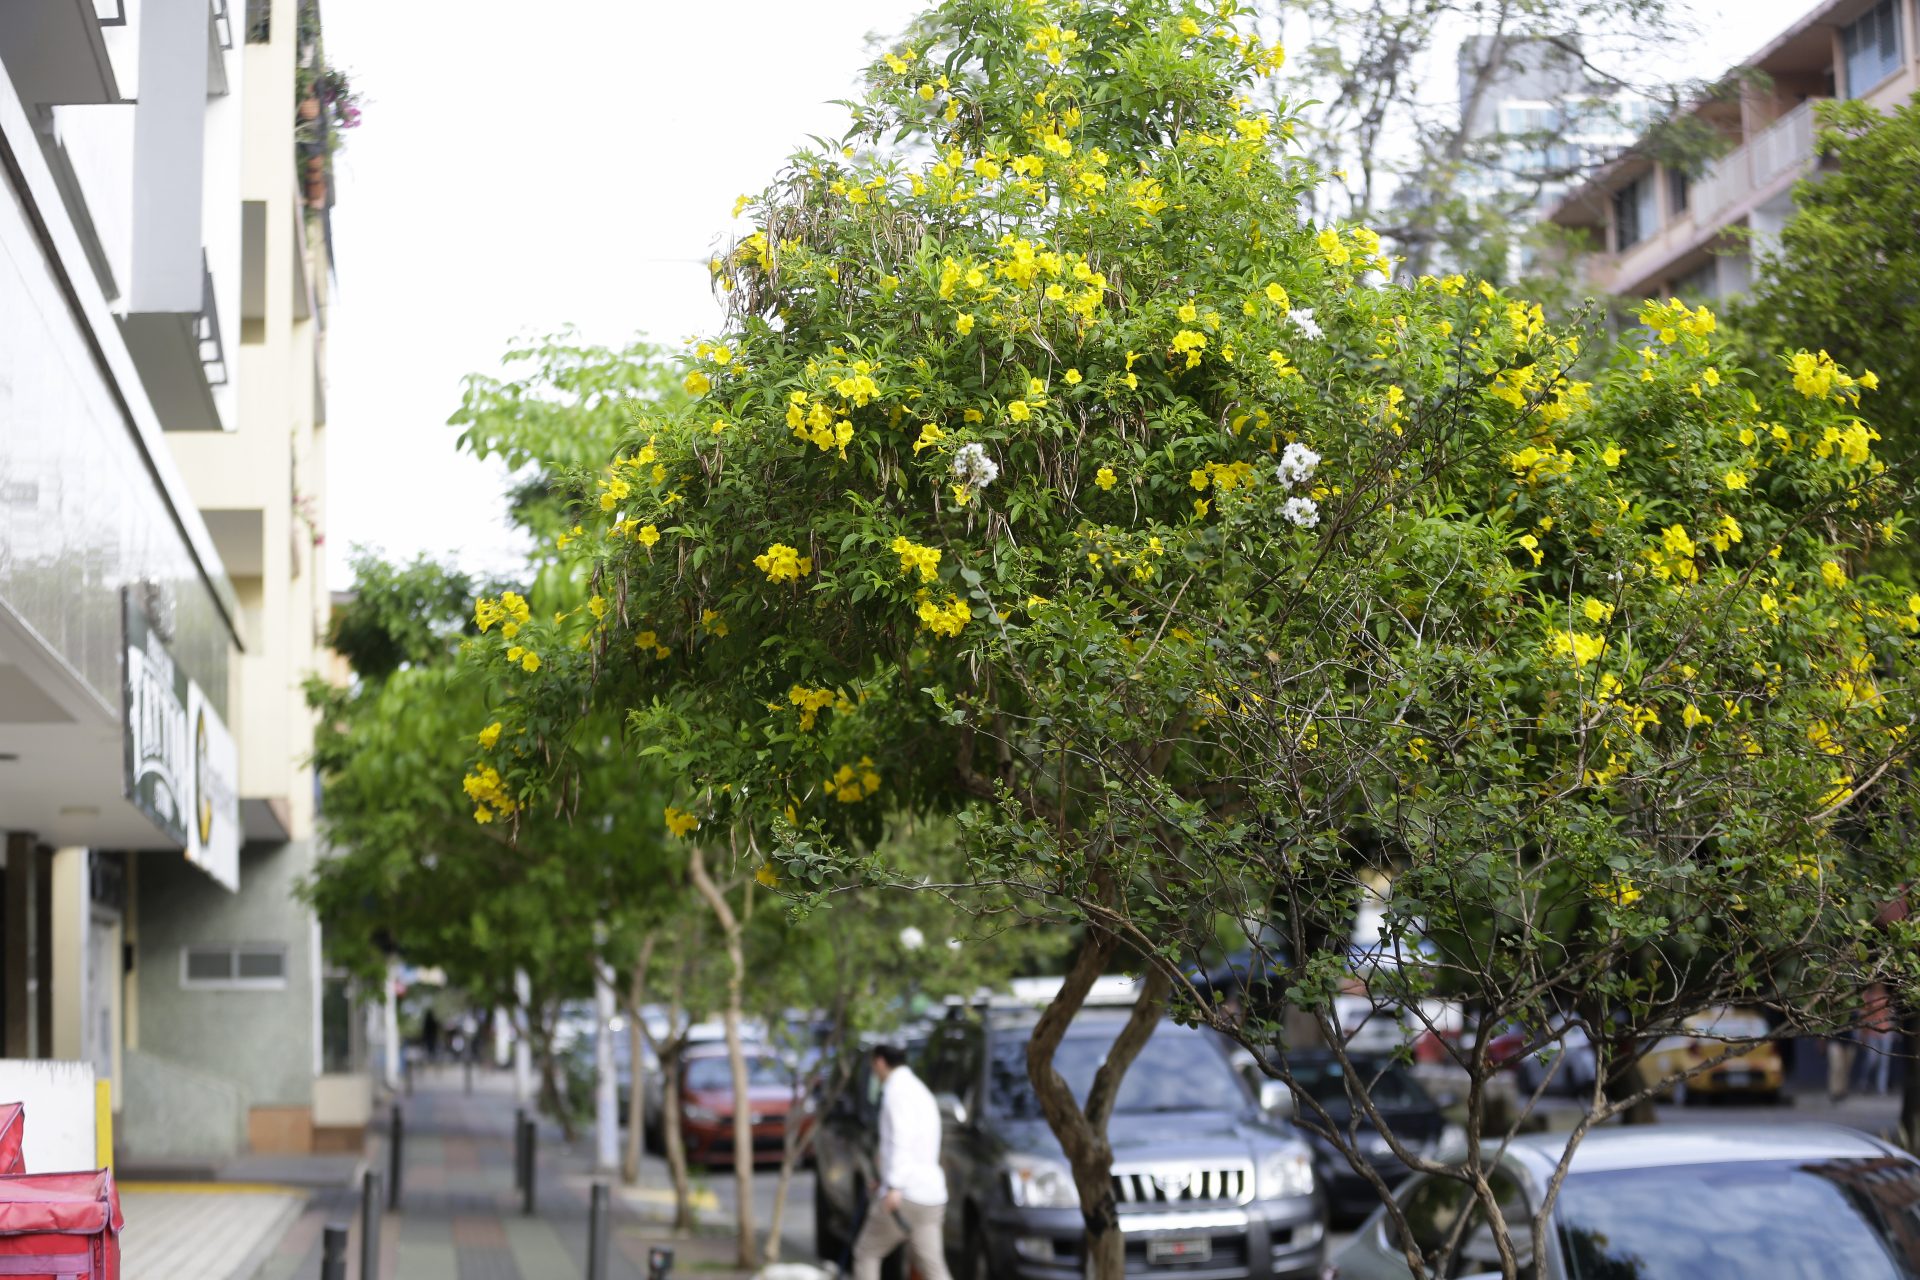 ACOMPAÑA CRÓNICA: PANAMÁ NATURALEZA AME9984. CIUDAD DE PANAMÁ (PANAMÁ), 24/04/2024.- Fotografía de guayacanes florecidos este miércoles en Ciudad de Panamá (Panamá). La floración de los guayacanes se convierte cada año, entre los meses de marzo y abril, en un espectáculo visual que pinta de amarillo el horizonte de la capital panameña, un tanto gris en los últimos meses debido a la alta contaminación ambiental. EFE/Carlos Lemos